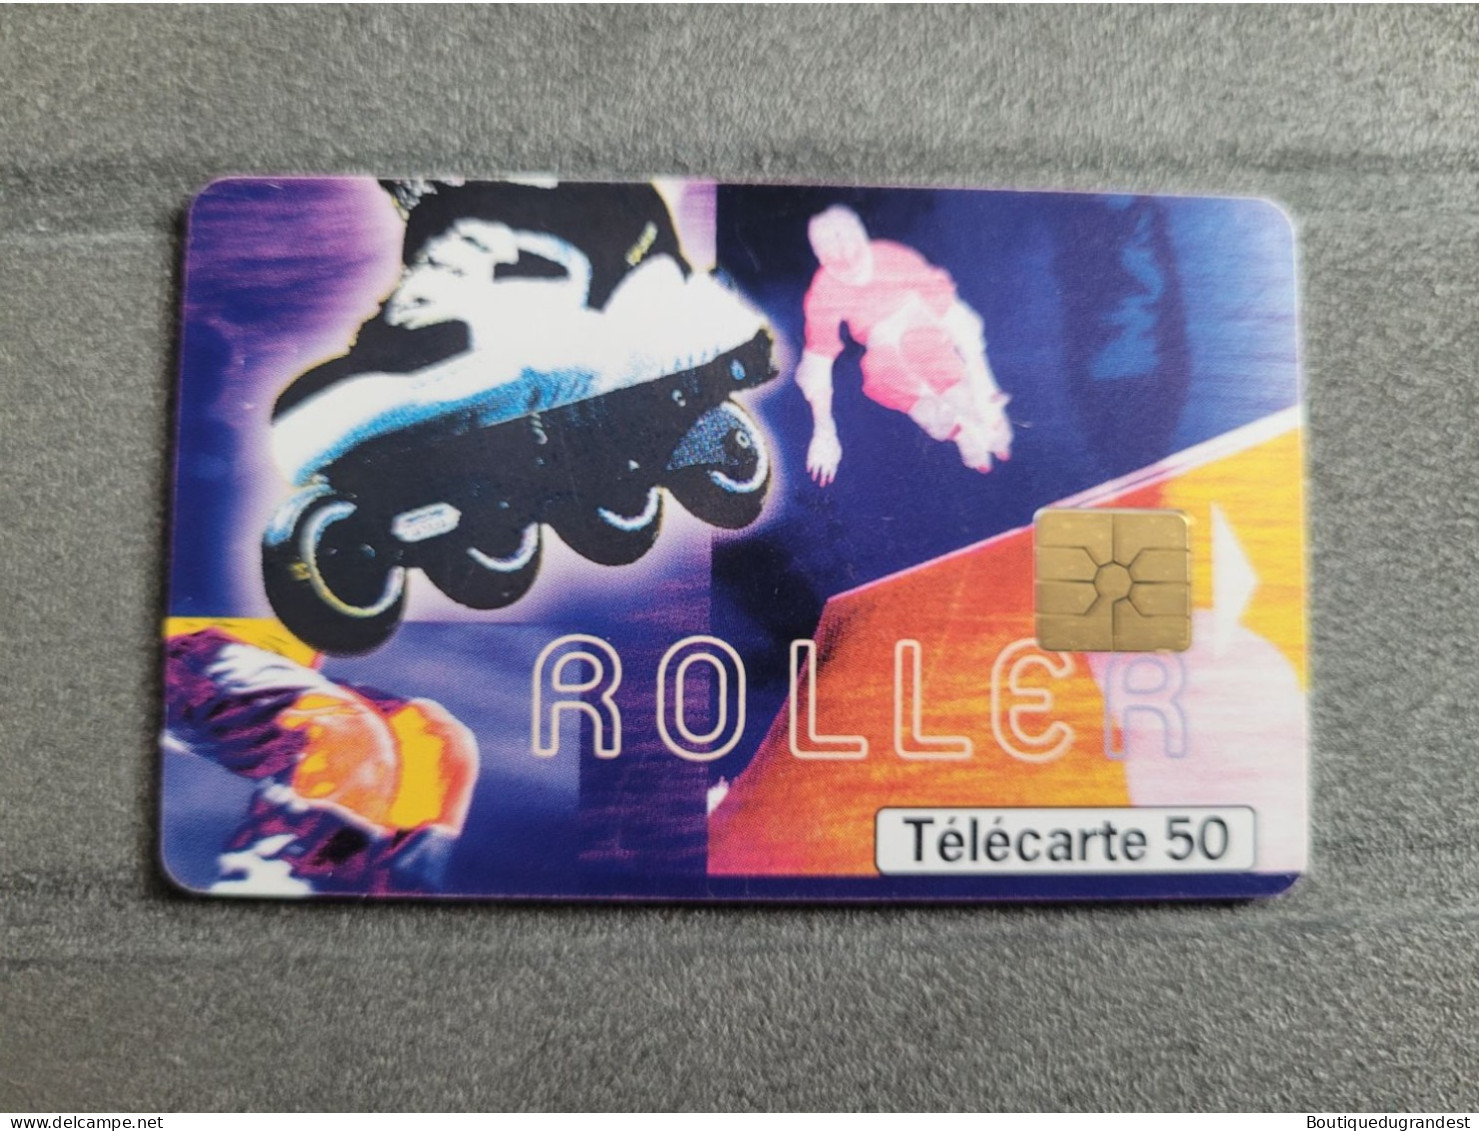 Télécarte 50 Unités Roller 12/99 - Sport